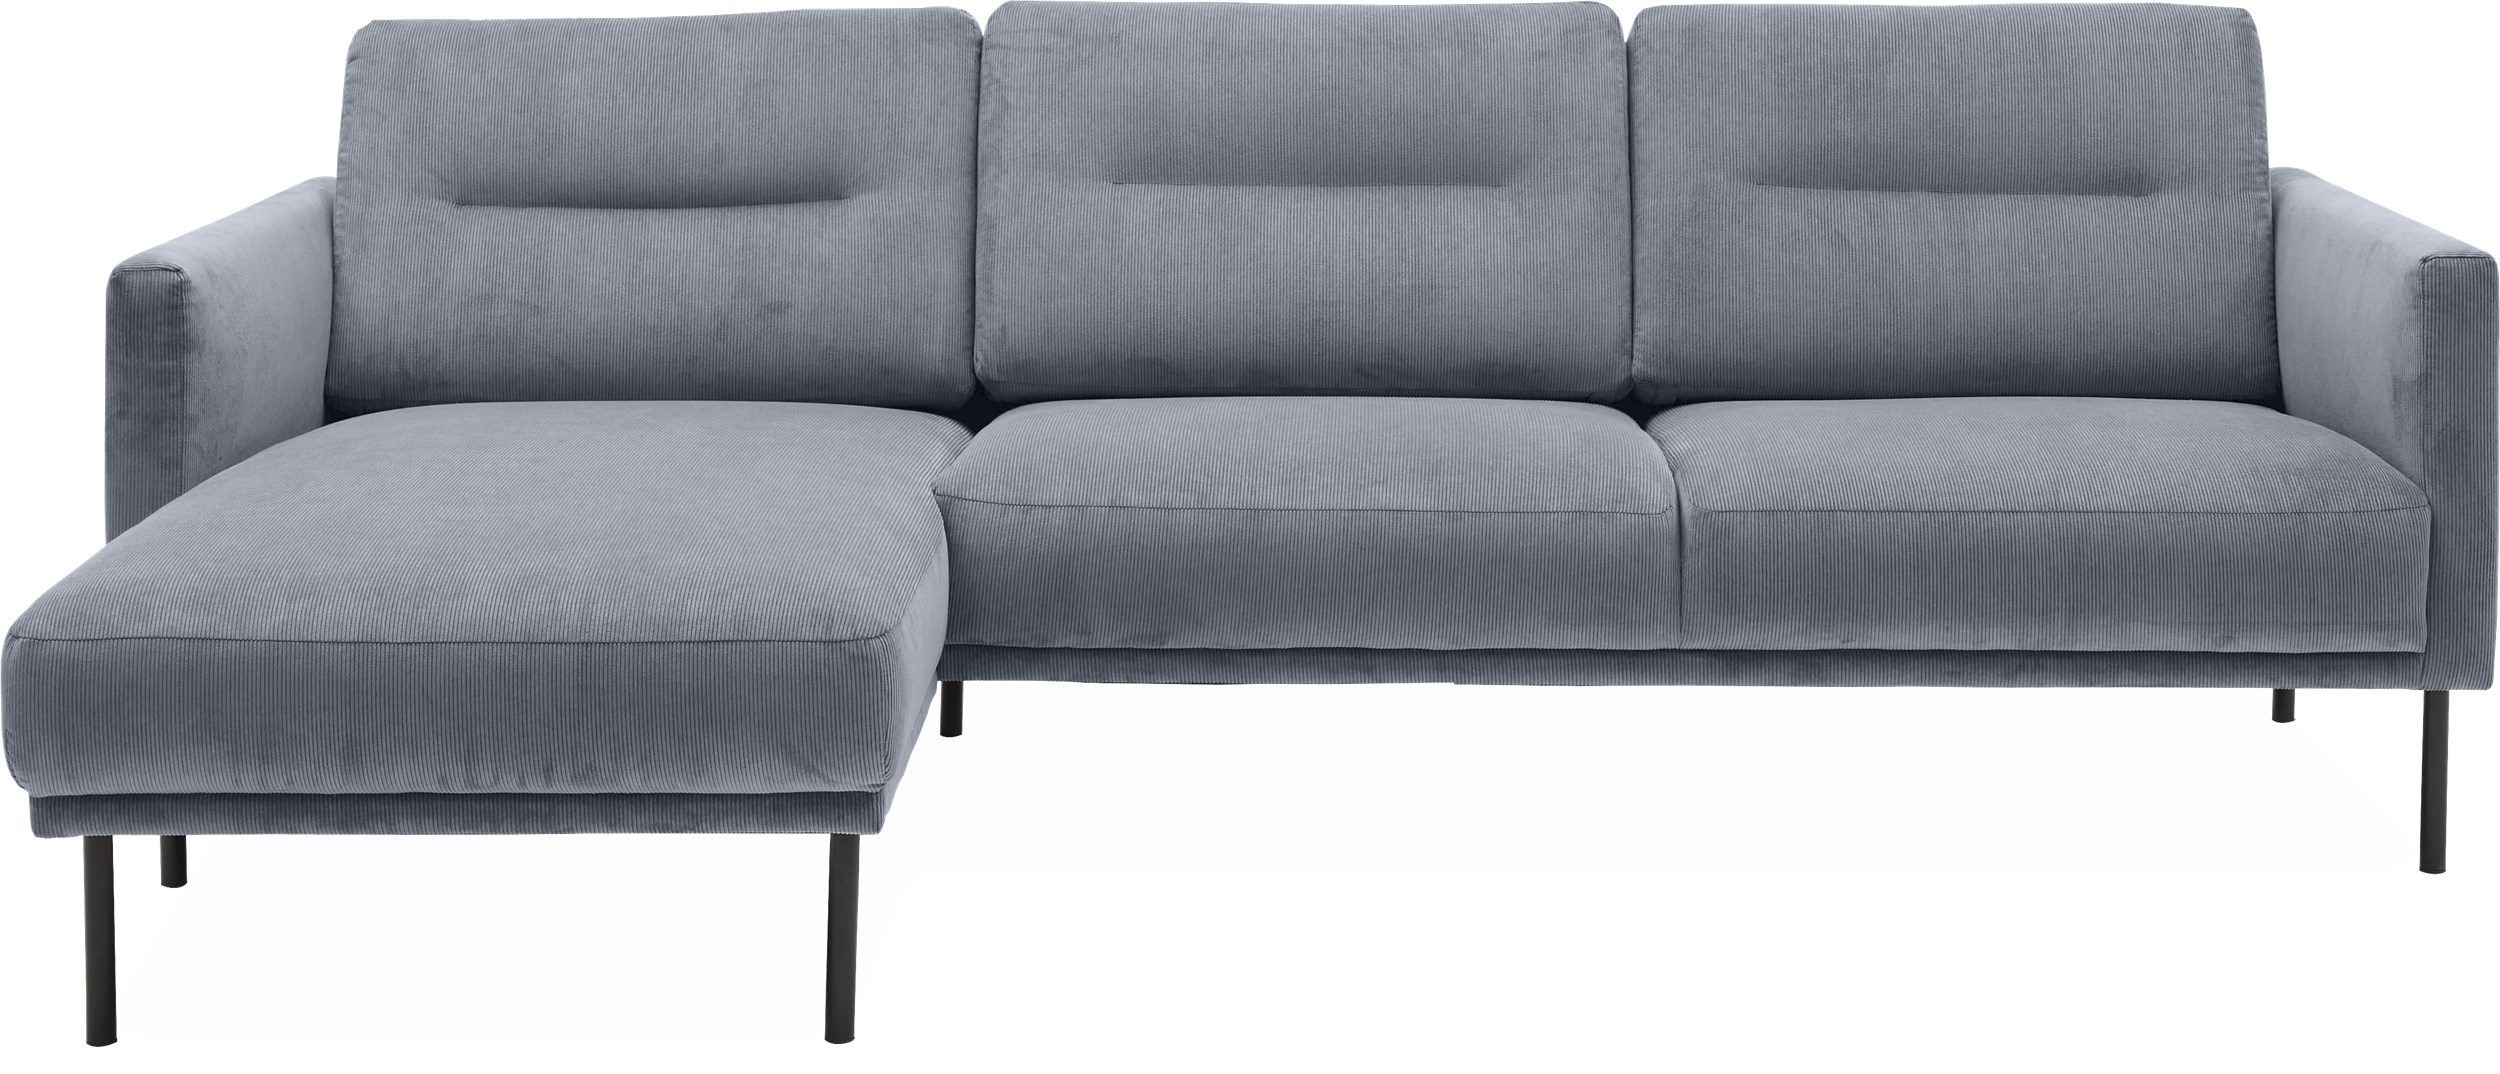 Larvik Sofa med chaiselong - Wave 40 Slate grey stof og ben i sortlakeret metal